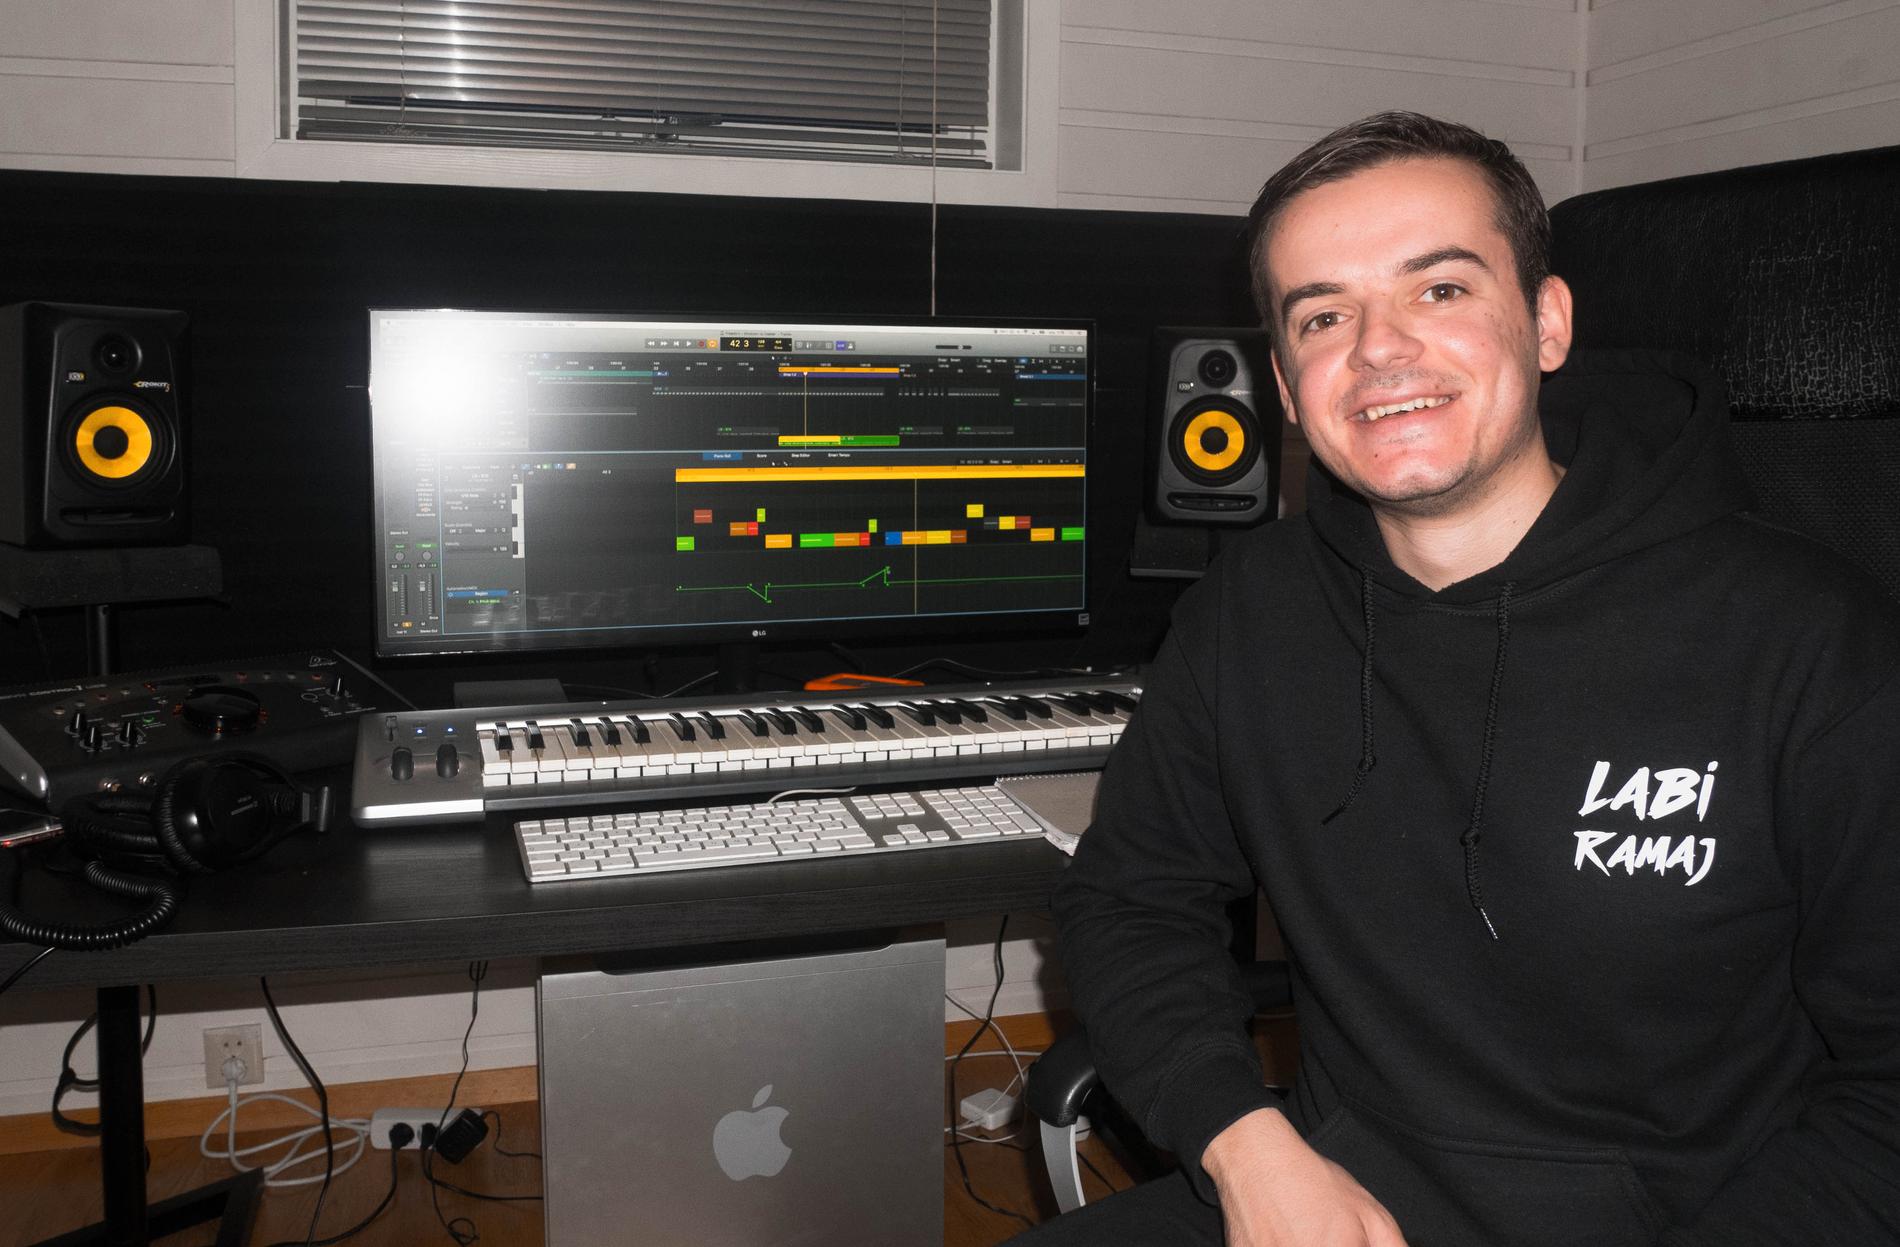 I studio med Labi Ramaj i Sandnes, mens han jobber på sin nye låt som skal slippes i slutten av februar. 